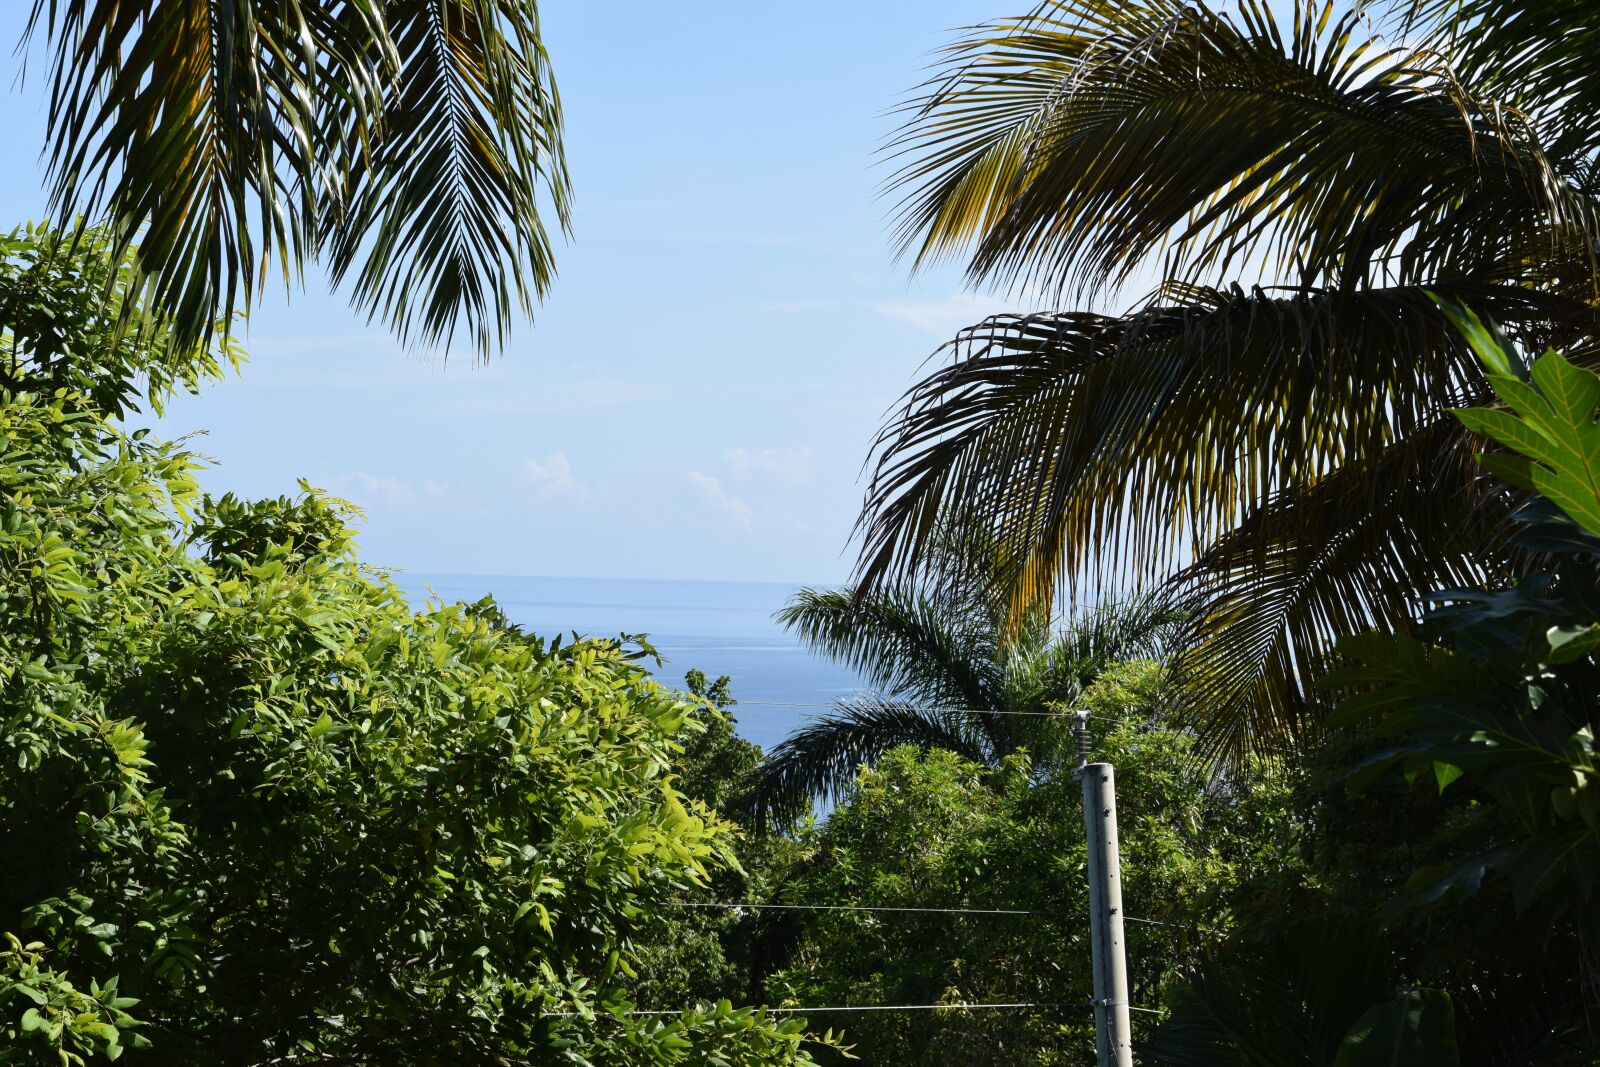 Nikon D5300 sample photo. Jamaica, vegetation, reggae photography